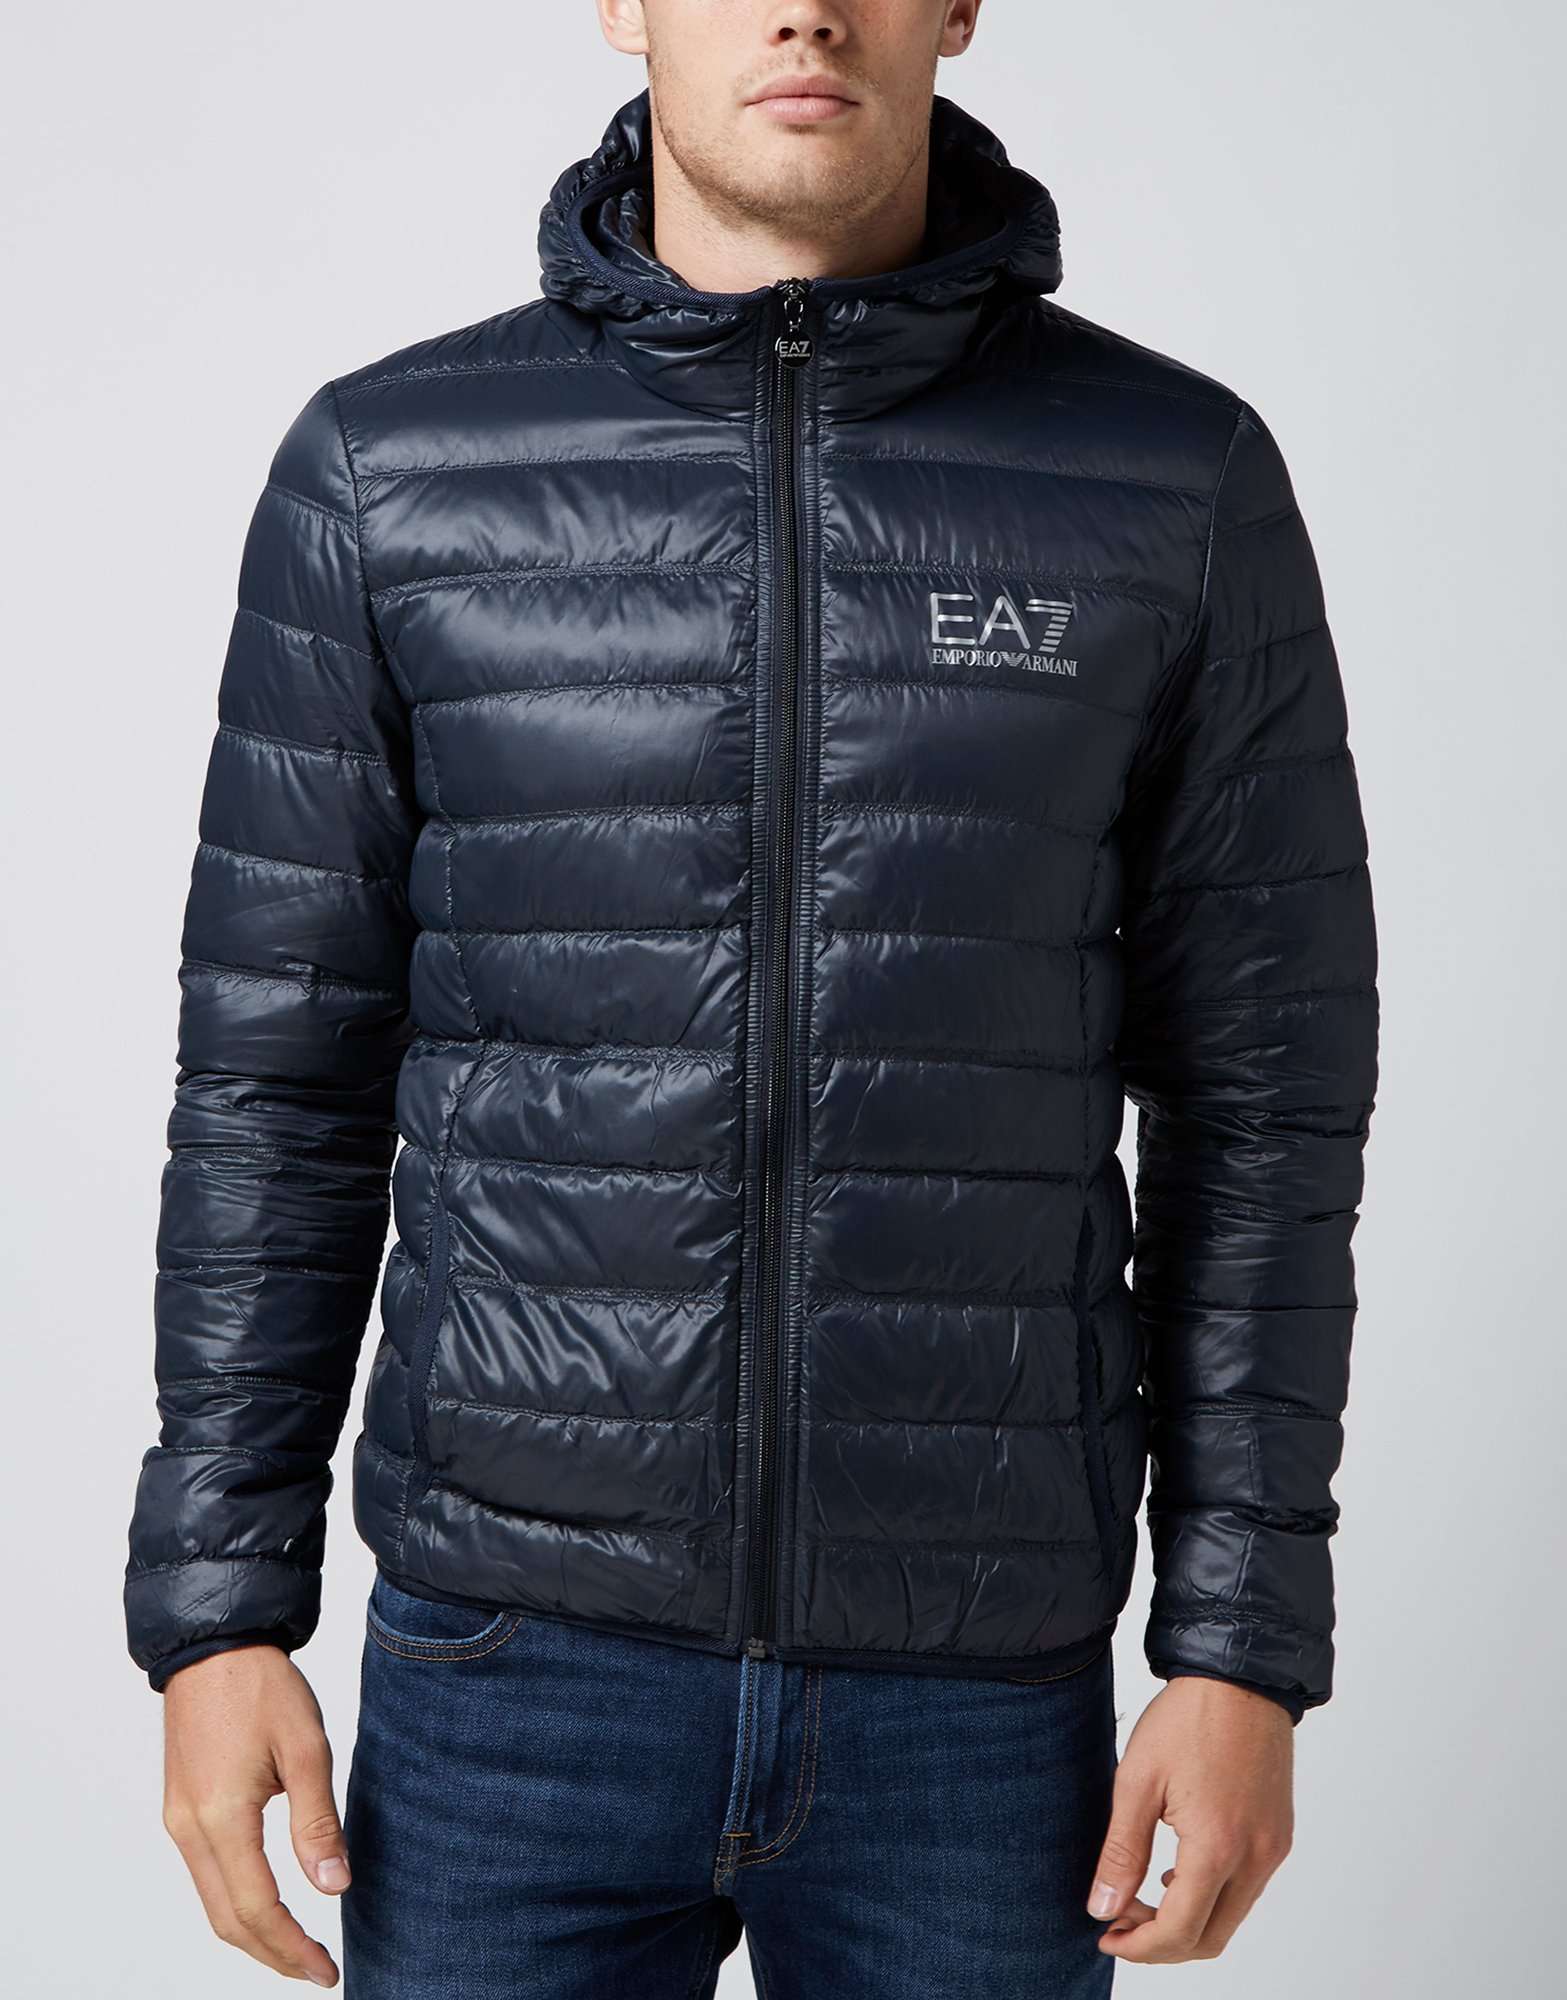 Emporio Armani EA7 Bubble Hooded Jacket | scotts Menswear